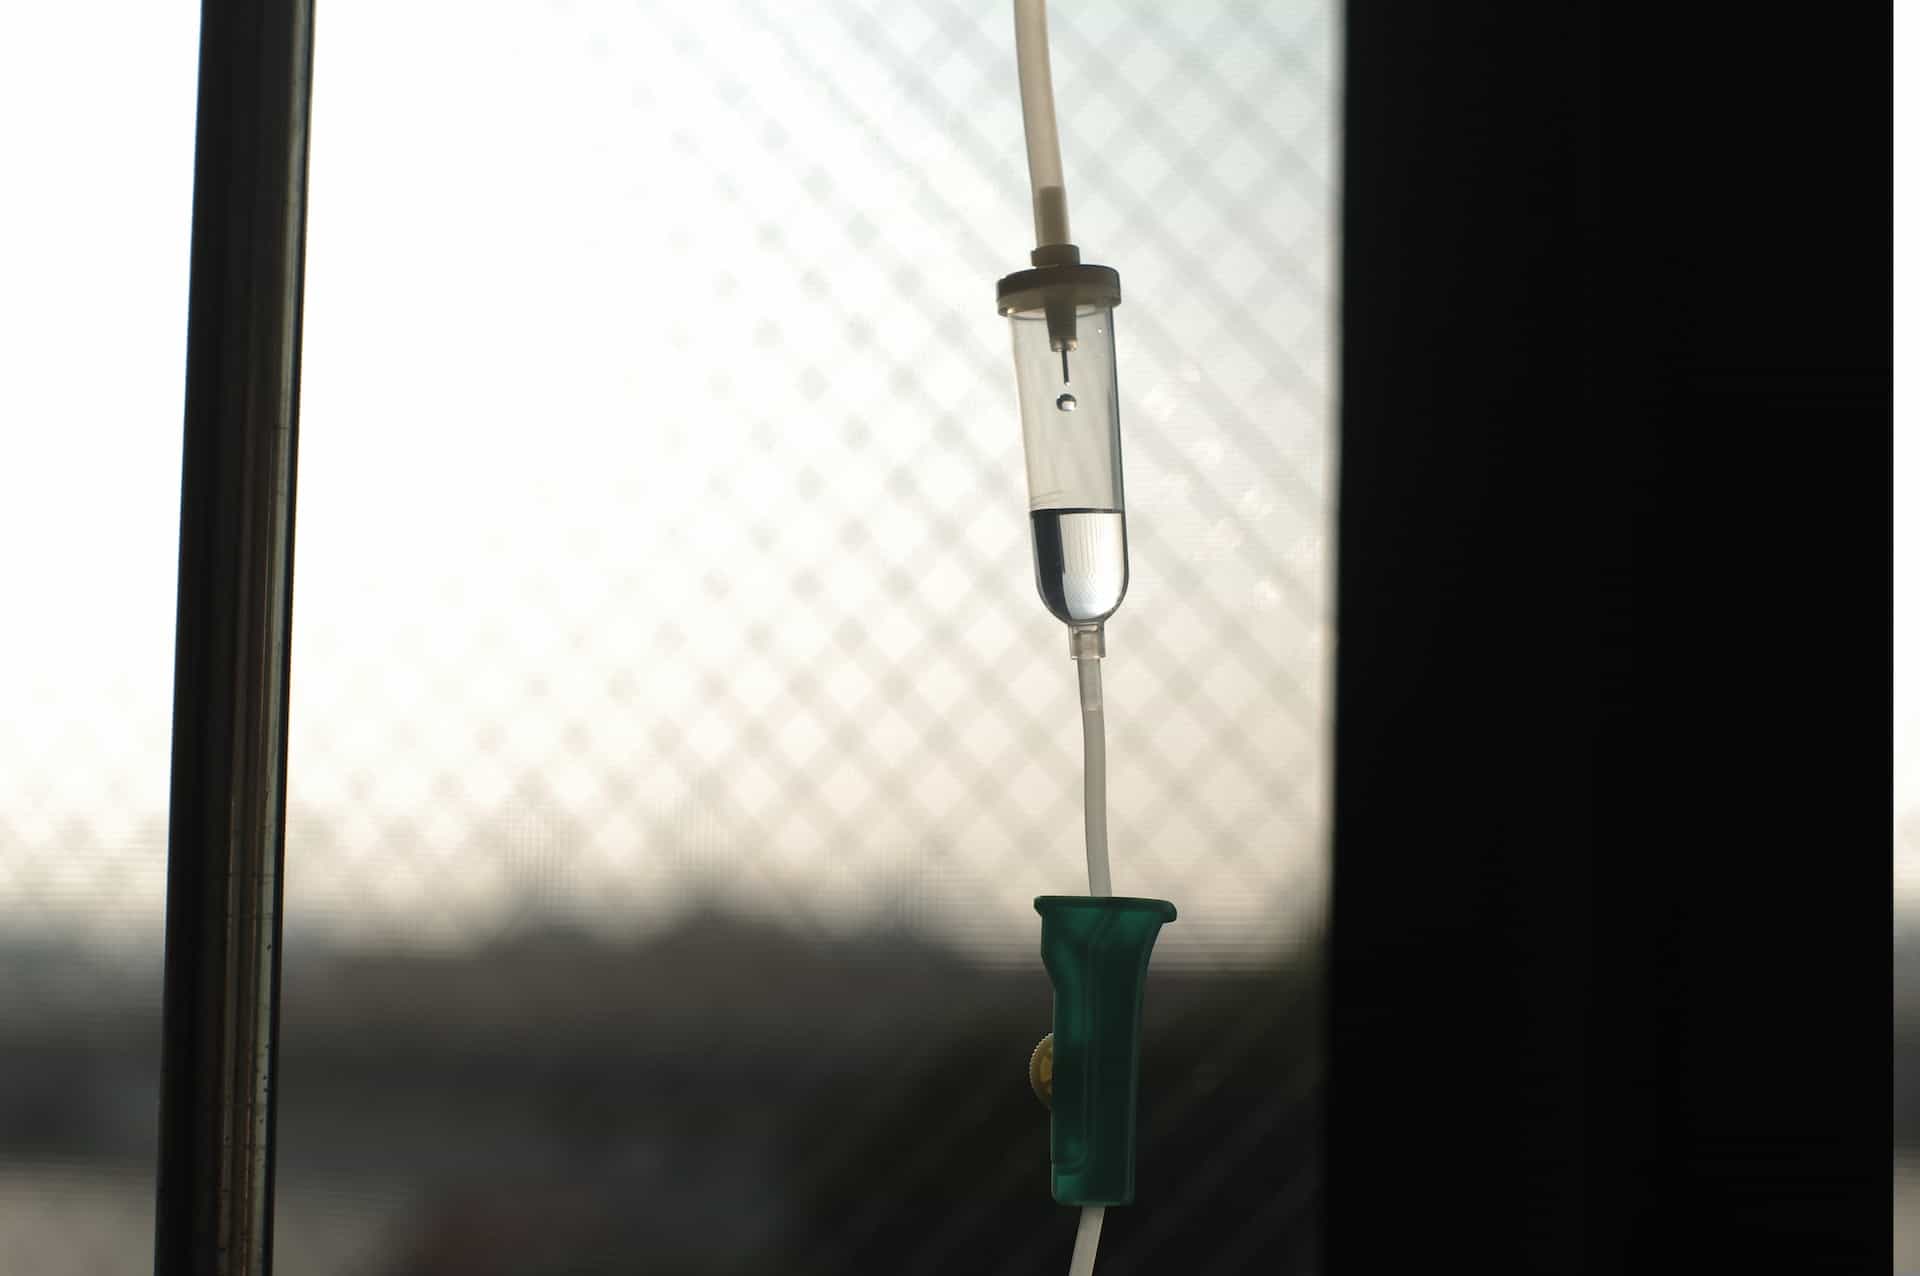 An IV drip tube by a window